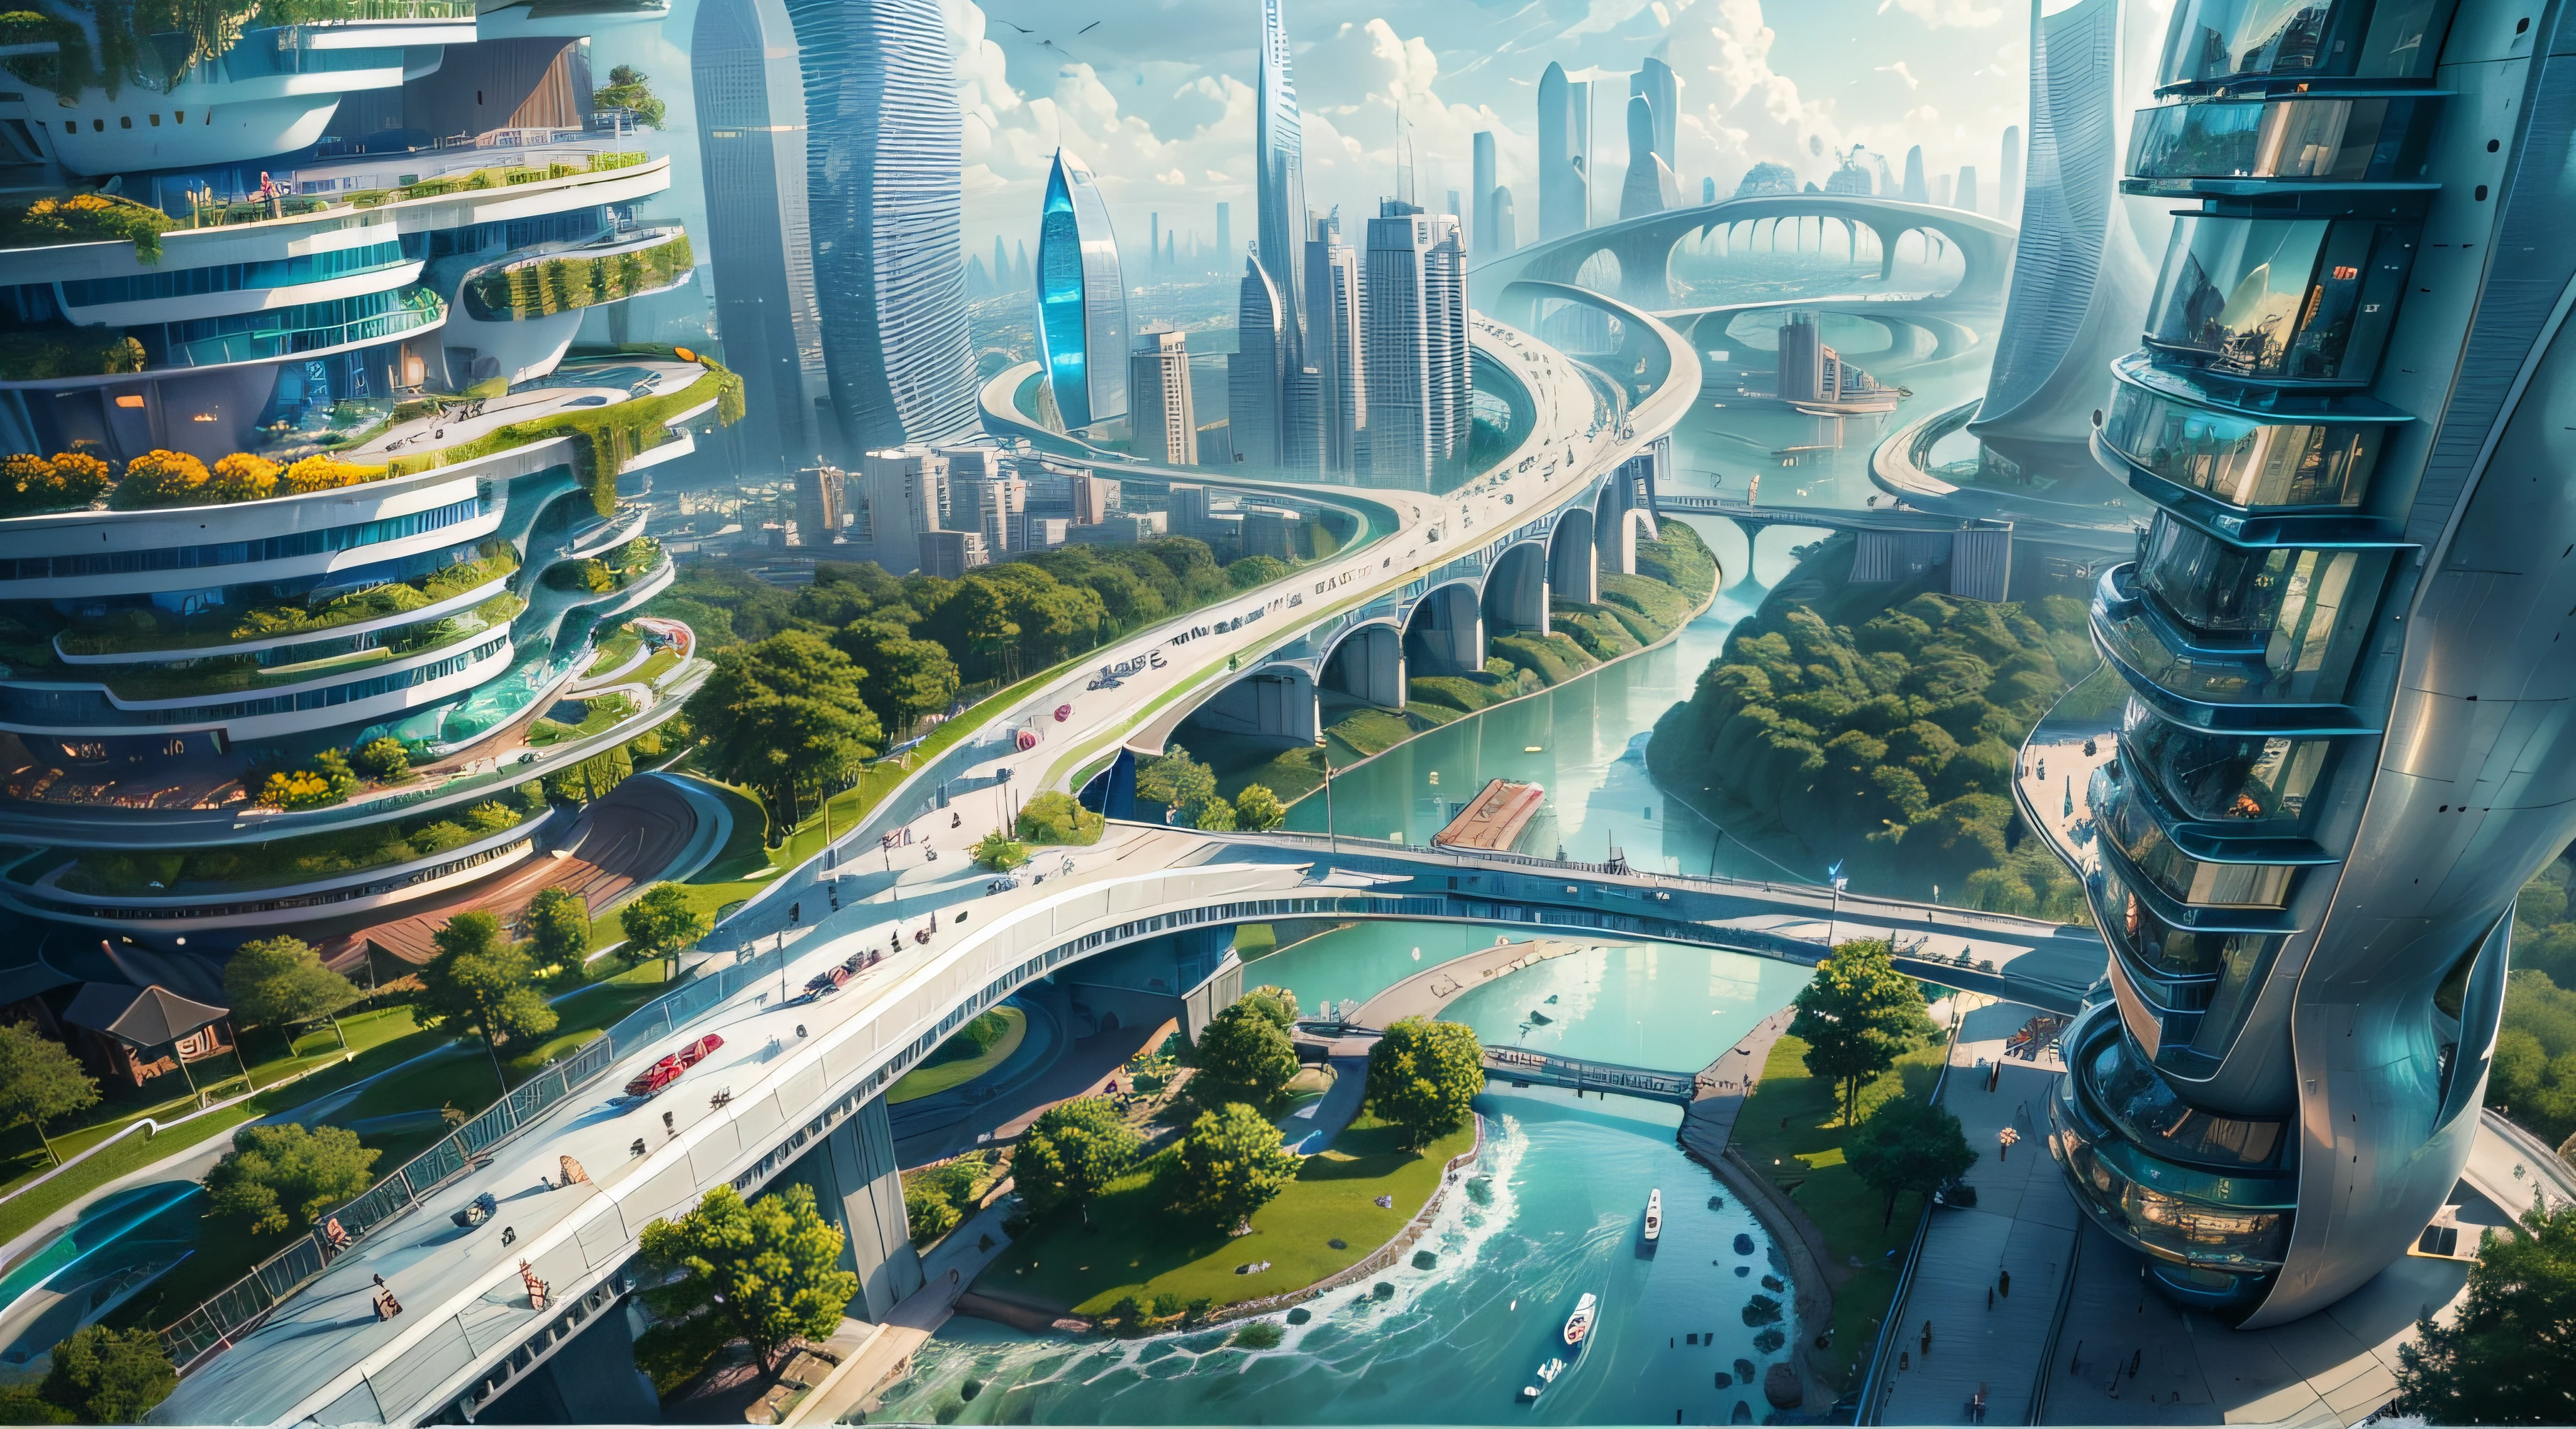 (最高品質,4K,8k,高解像度,傑作:1.2),超詳細,(現実的,写実的な,写真のようにリアル:1.37),未来的な水上都市,未来の技術,巨大な都市型ハイテクタブレットプラットフォーム,飛行船,空に浮かぶ,未来都市,小さな飛行船が周囲に,ハイテク半球形プラットフォーム,カラフルなライト,高度なアーキテクチャ,モダン建築,超高層ビル,クラウドにアクセスする,美しい景色,街の眺め,印象的なデザイン,自然とシームレスに融合,活気に満ちた活気のある雰囲気,未来の交通システム,駐車禁止,透明なパス,豊かな緑,スカイガーデン,滝,壮大なスカイライン,水面に映る,輝く川,建築の革新,未来的な高層ビル,透明ドーム,建物の形状が珍しい,高架歩道,印象的なスカイライン,光るライト,未来の技術,ミニマリストデザイン,景勝地,全景,雲を貫く塔,鮮やかな色彩,壮大な日の出,壮大な夕日,まばゆい光のディスプレイ,魔法のような雰囲気,未来都市,都会のユートピア,ラグジュアリーライフスタイル,革新的なエネルギー,持続可能な発展,スマートシティテクノロジー,高度なインフラストラクチャ,静かな雰囲気,自然とテクノロジーは調和して共存する,素晴らしい街並み,前例のない都市計画,建築は自然とシームレスにつながる,ハイテク都市,最先端のエンジニアリングの驚異,都市生活の未来,先見性のある建築コンセプト,エネルギー効率の高い建物,環境との調和,雲の上に浮かぶ街,ユートピアの夢が現実になる,可能性は無限大,最先端の交通ネットワーク,グリーンエネルギーの統合,革新的な素材,印象的なホログラフィックディスプレイ,高度な通信システム,息を呑むような空中からの眺め,静かで平和な環境,モダニズムの美学,天上の美しさ